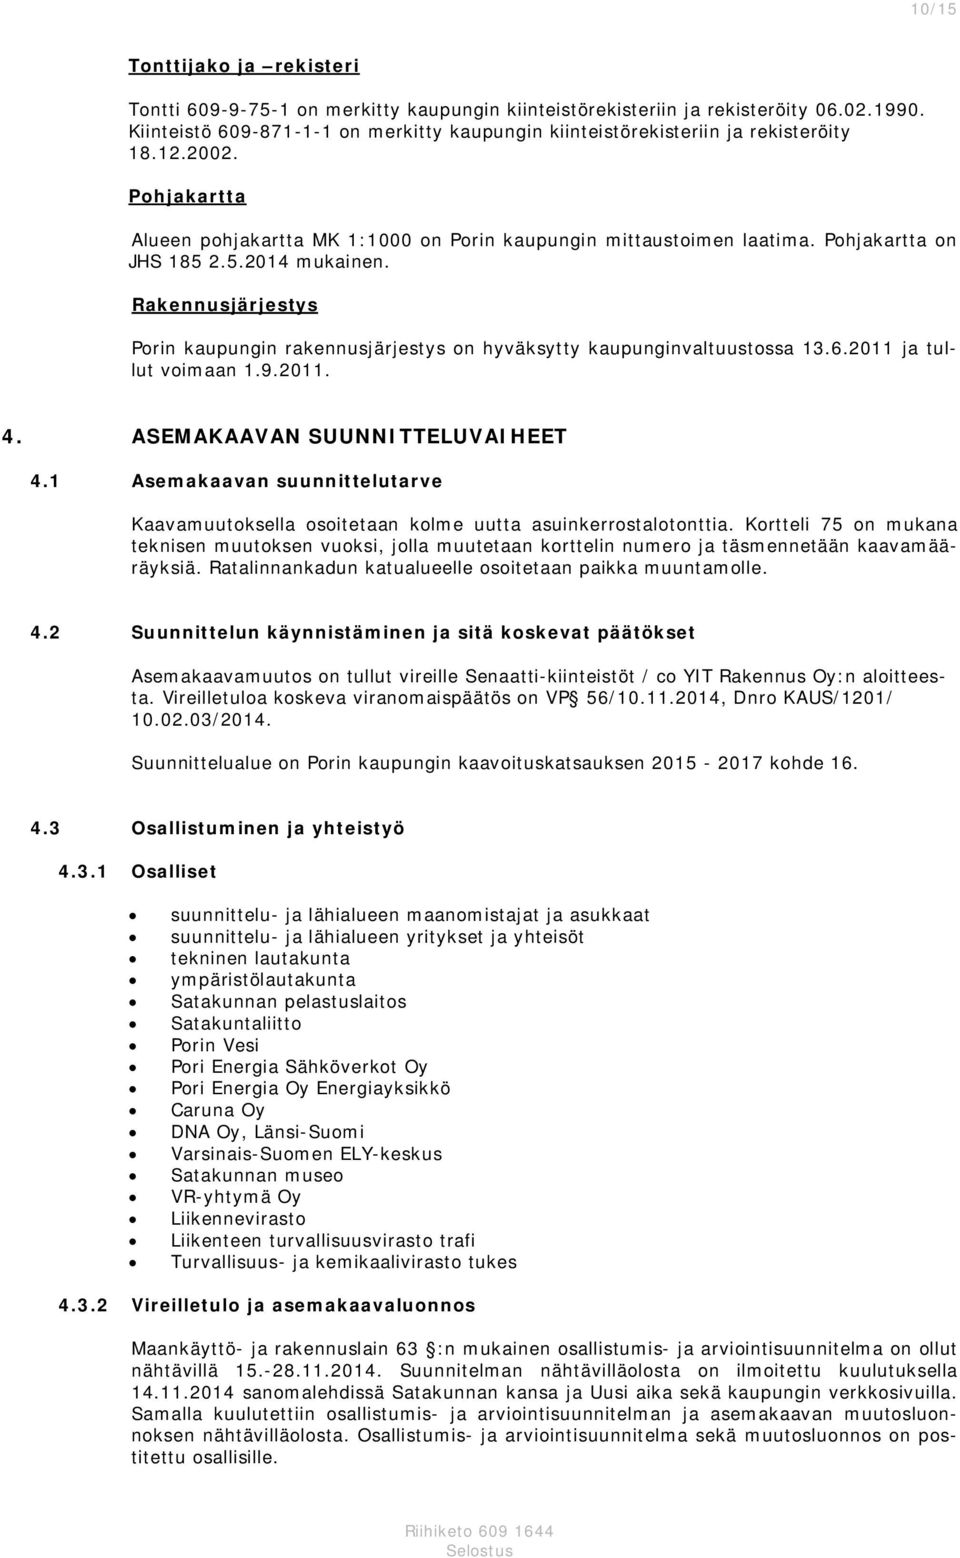 Pohjakartta on JHS 185 2.5.2014 mukainen. Rakennusjärjestys Porin kaupungin rakennusjärjestys on hyväksytty kaupunginvaltuustossa 13.6.2011 ja tullut voimaan 1.9.2011. 4.